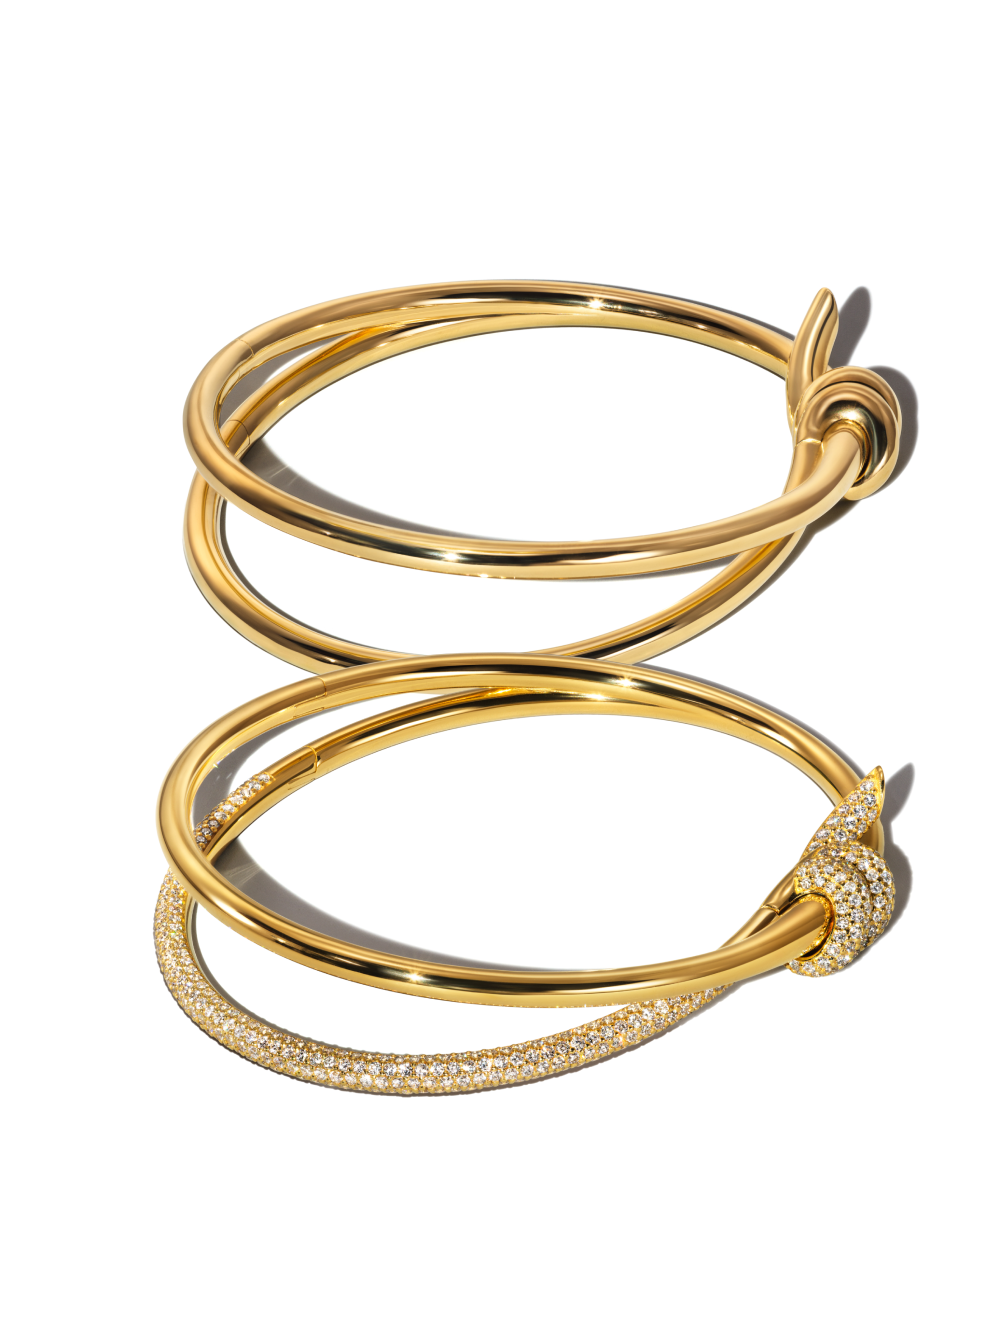 Tiffany & Co. объявил о запуске новой коллекции украшений Knot (фото 8)